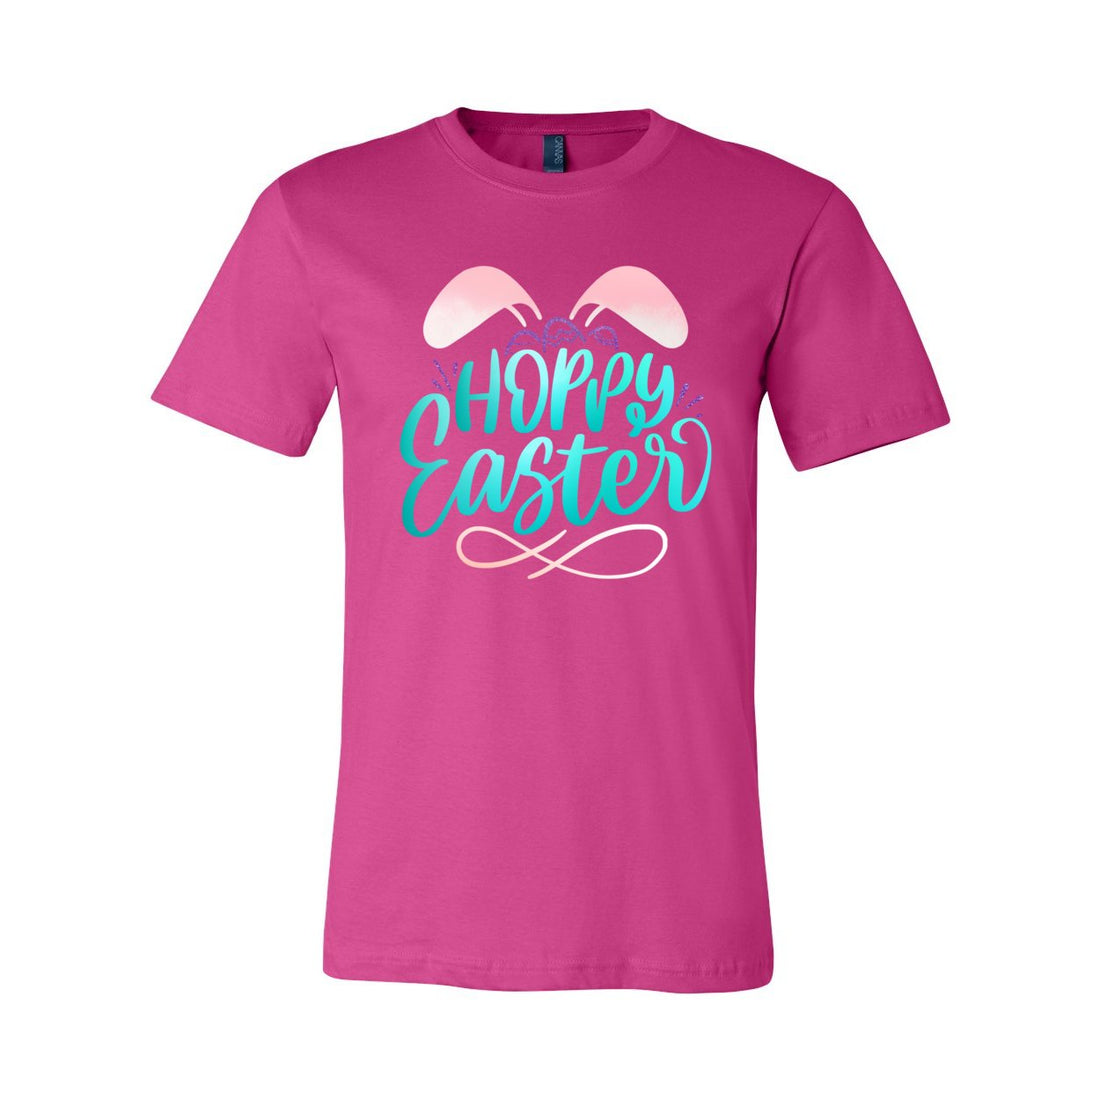 Hoppy Easter Tee - T-Shirts - Positively Sassy - Hoppy Easter Tee